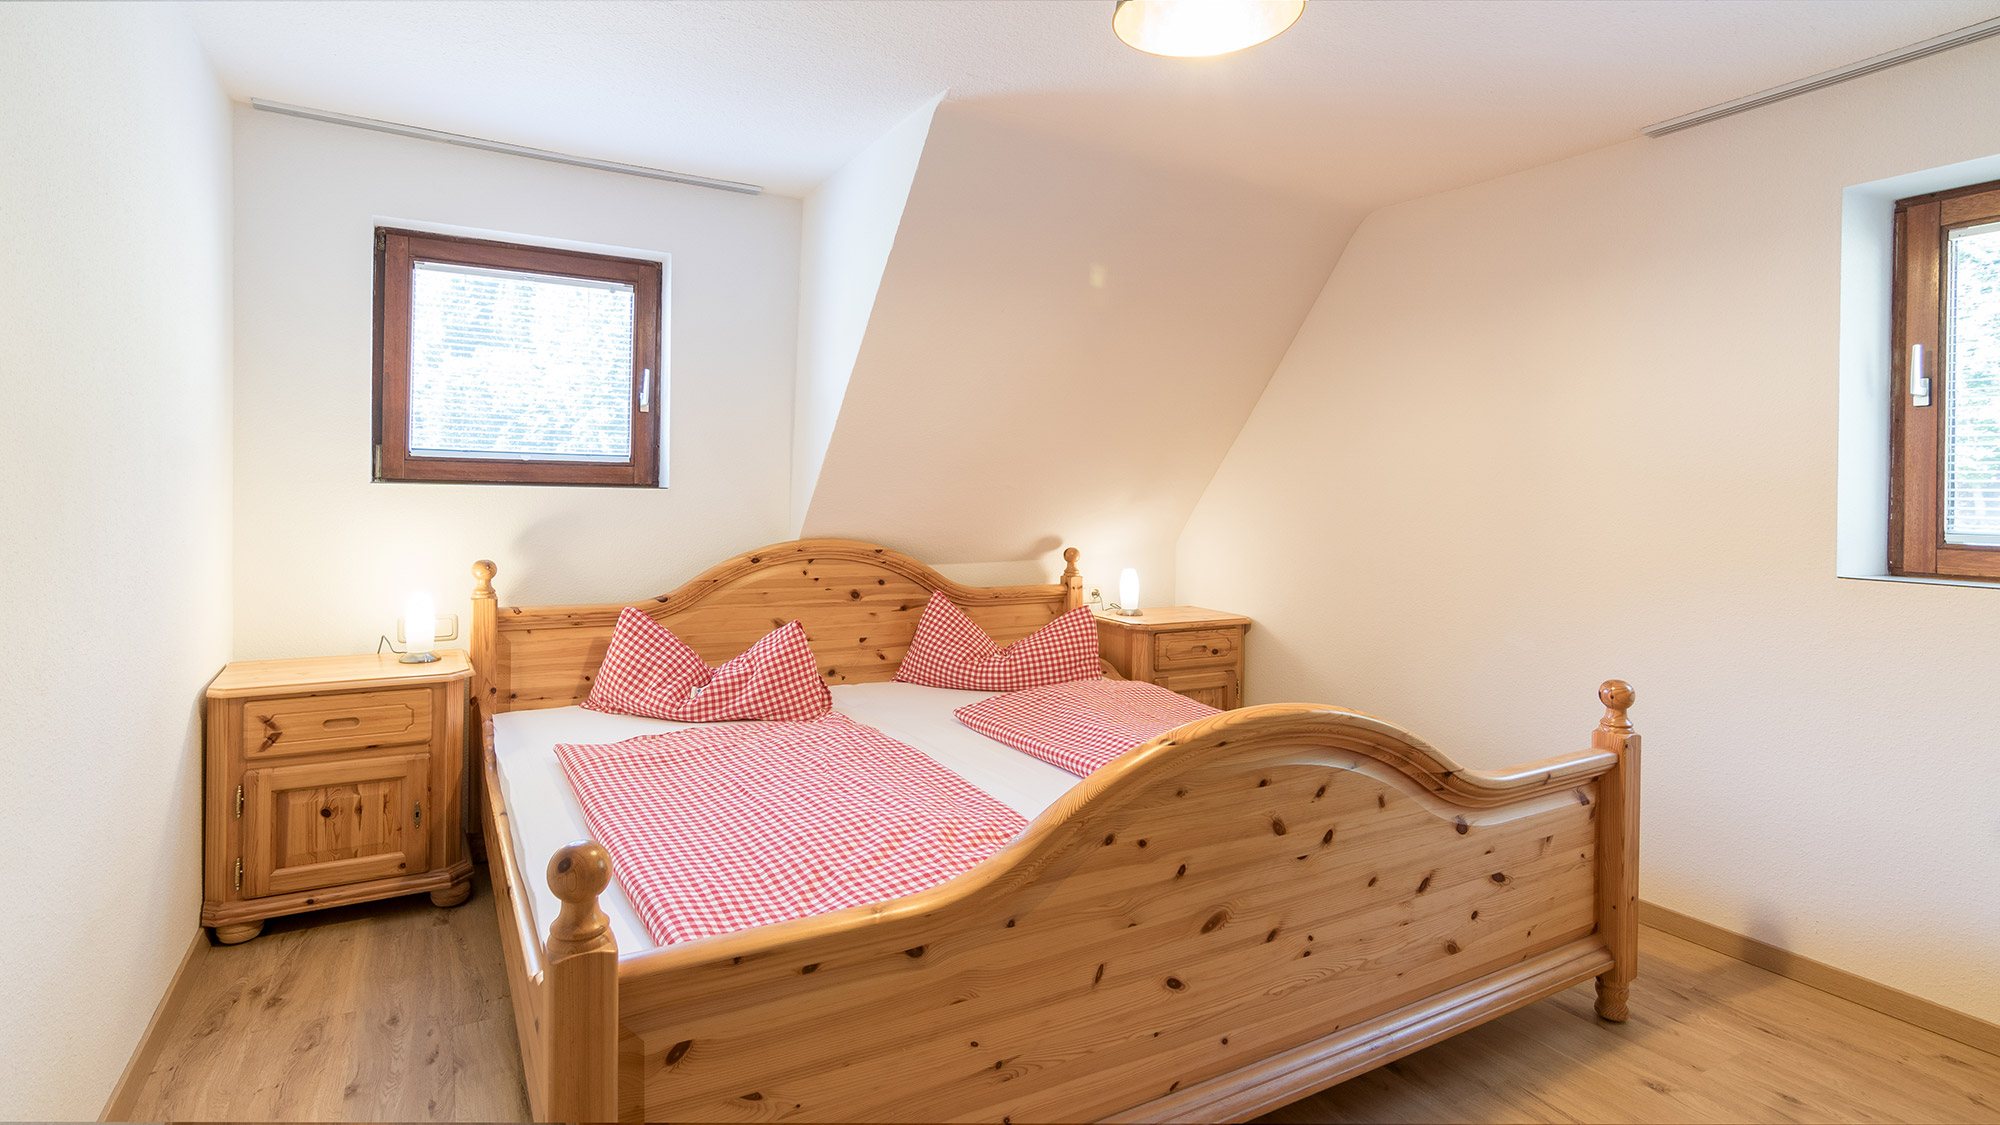 Schlafzimmer im gemütlichen Schwarzwald-Stil